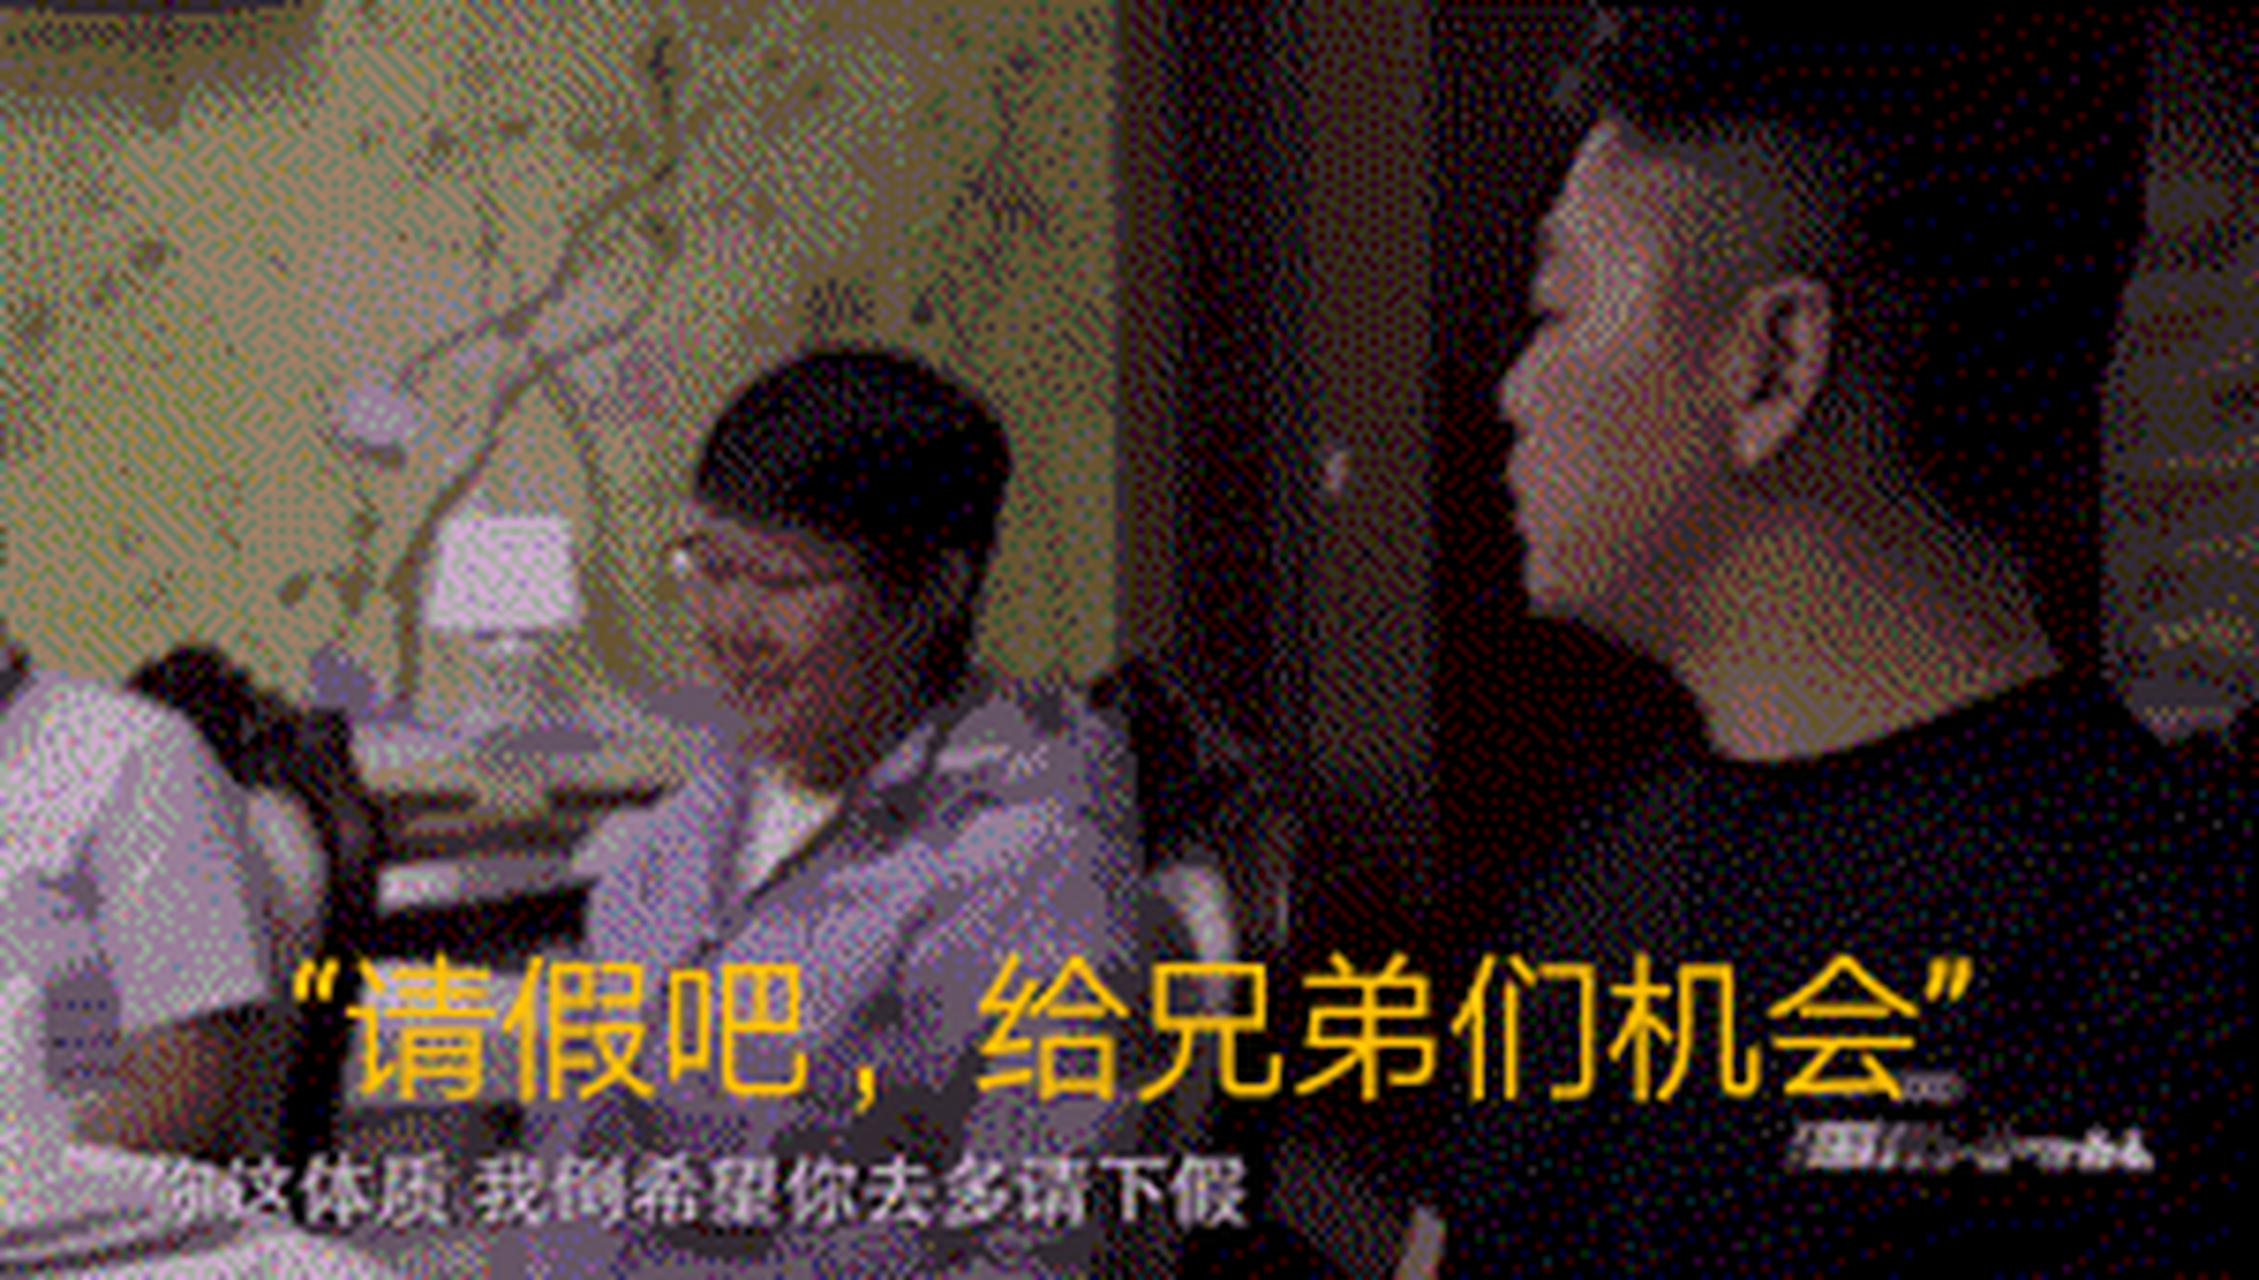 一次,京东女高管,向刘强东报告怀孕喜讯